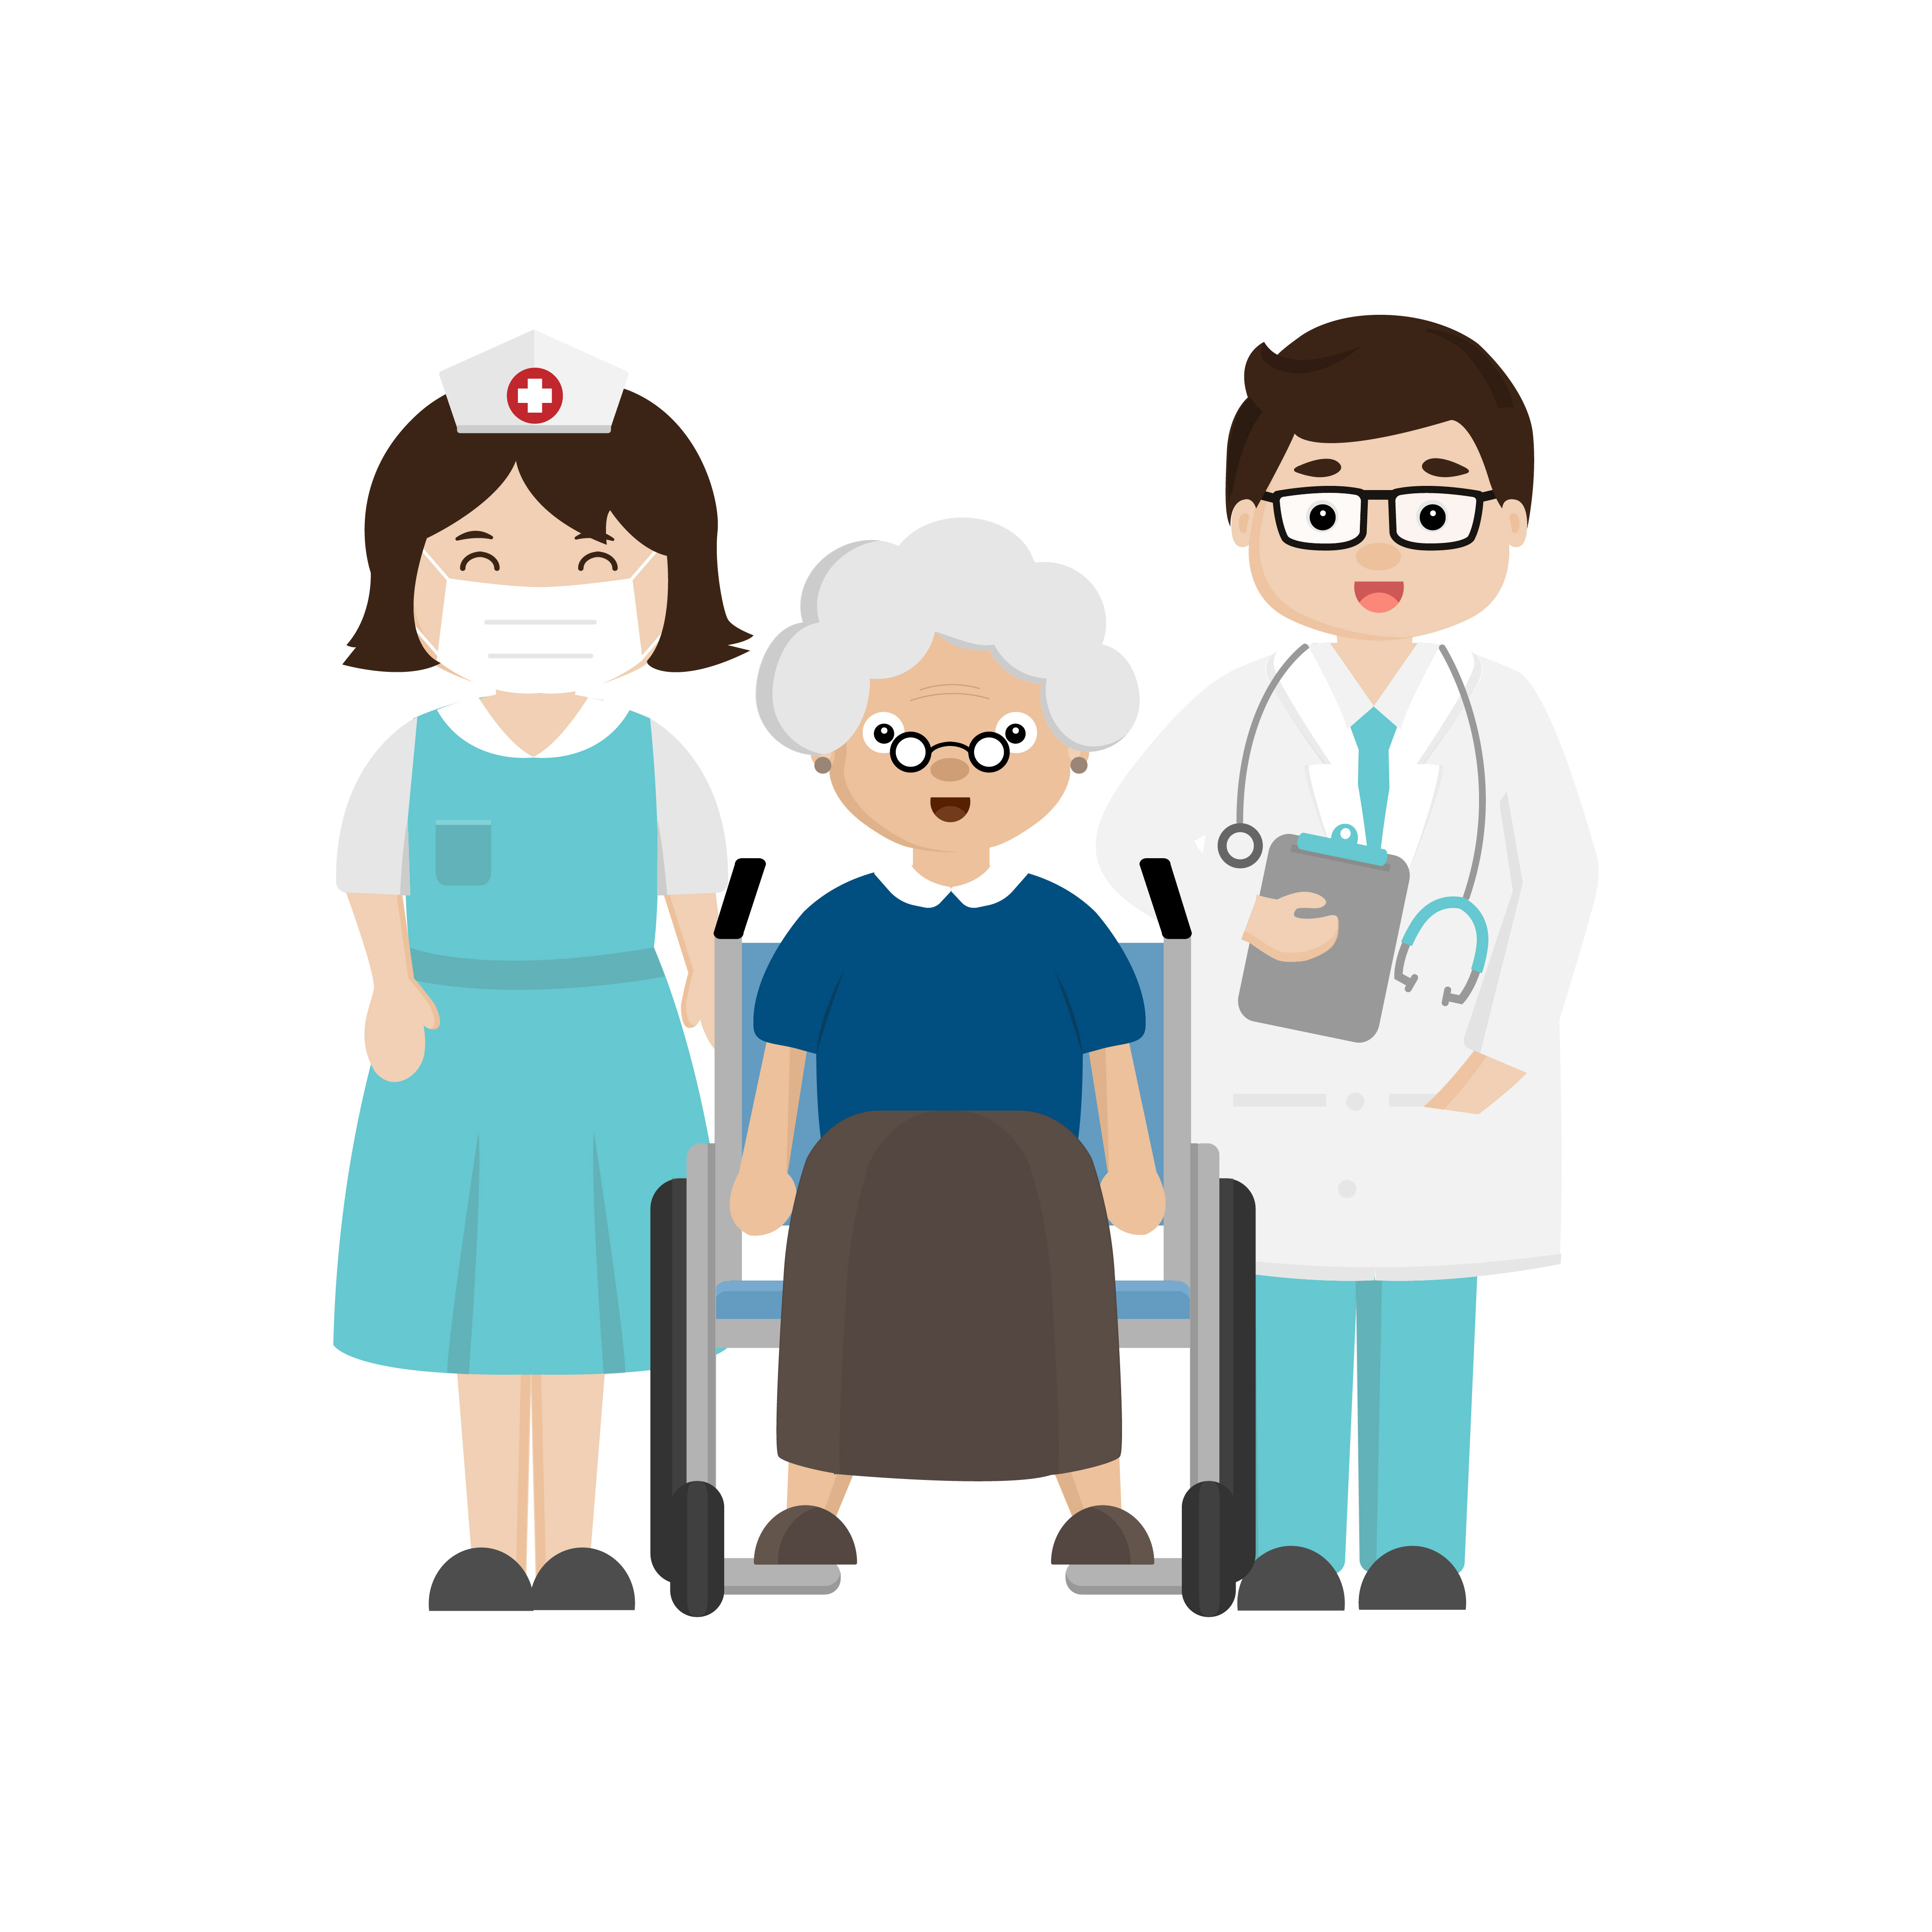 Ilustração dos desenhos animados da equipe de equipe médica do hospital,  personagens de médicos e enfermeiros.